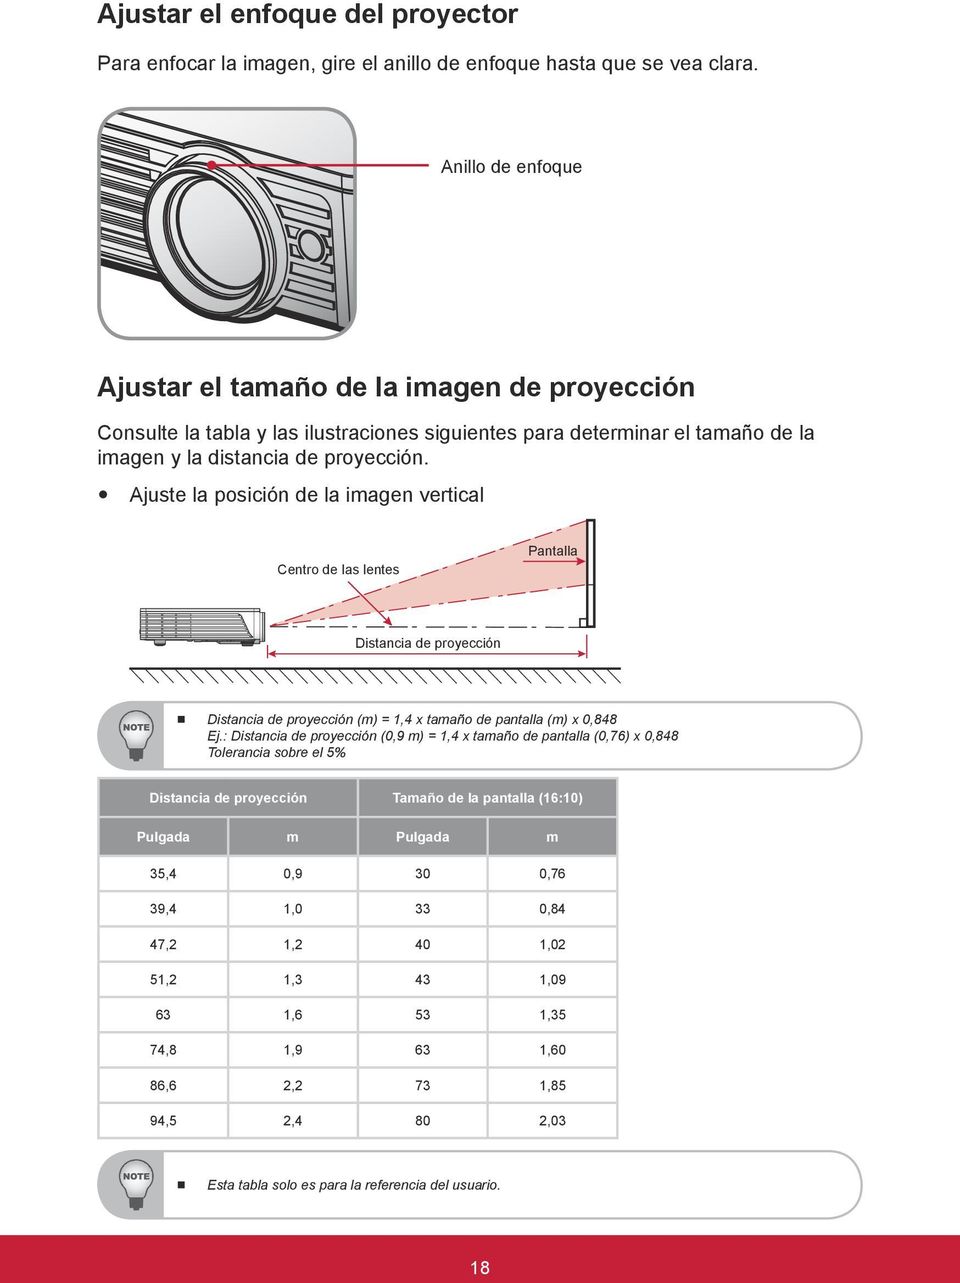 y Ajuste la posición de la imagen vertical Centro de las lentes Pantalla Distancia de proyección Distancia de proyección (m) = 1,4 x tamaño de pantalla (m) x 0,848 Ej.